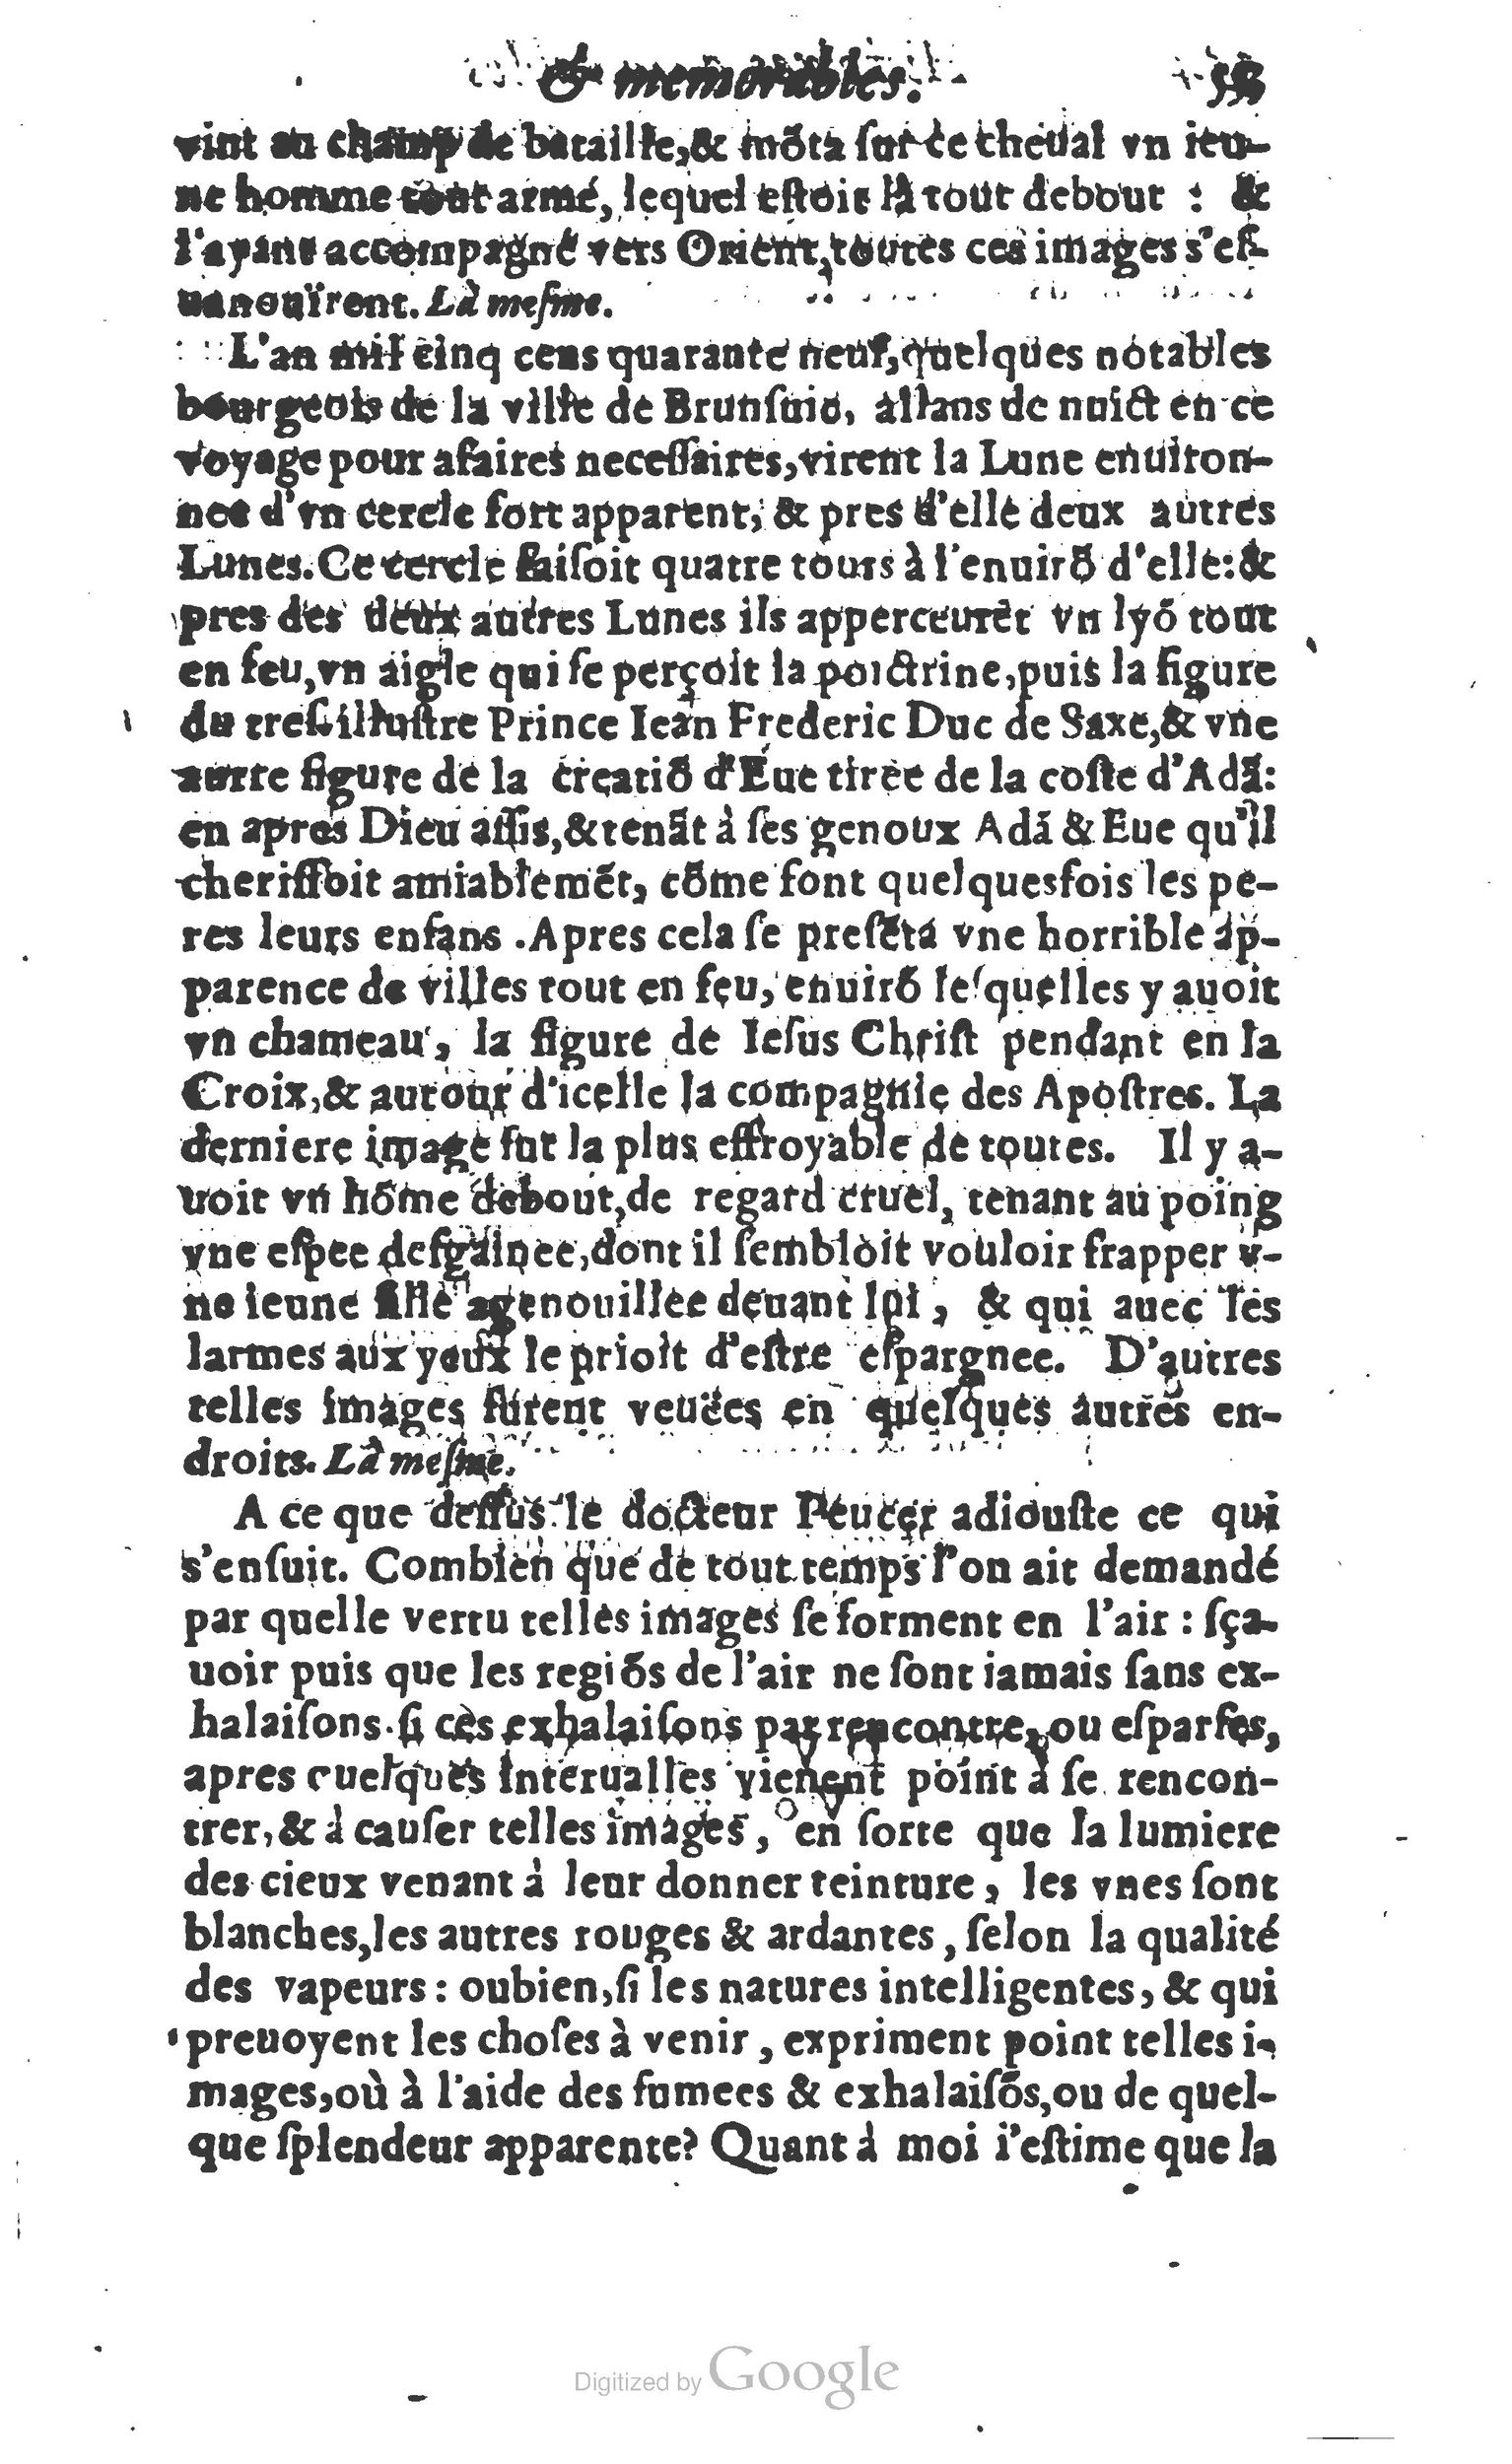 1610 Trésor d’histoires admirables et mémorables de nostre temps Marceau Princeton_Page_0574.jpg